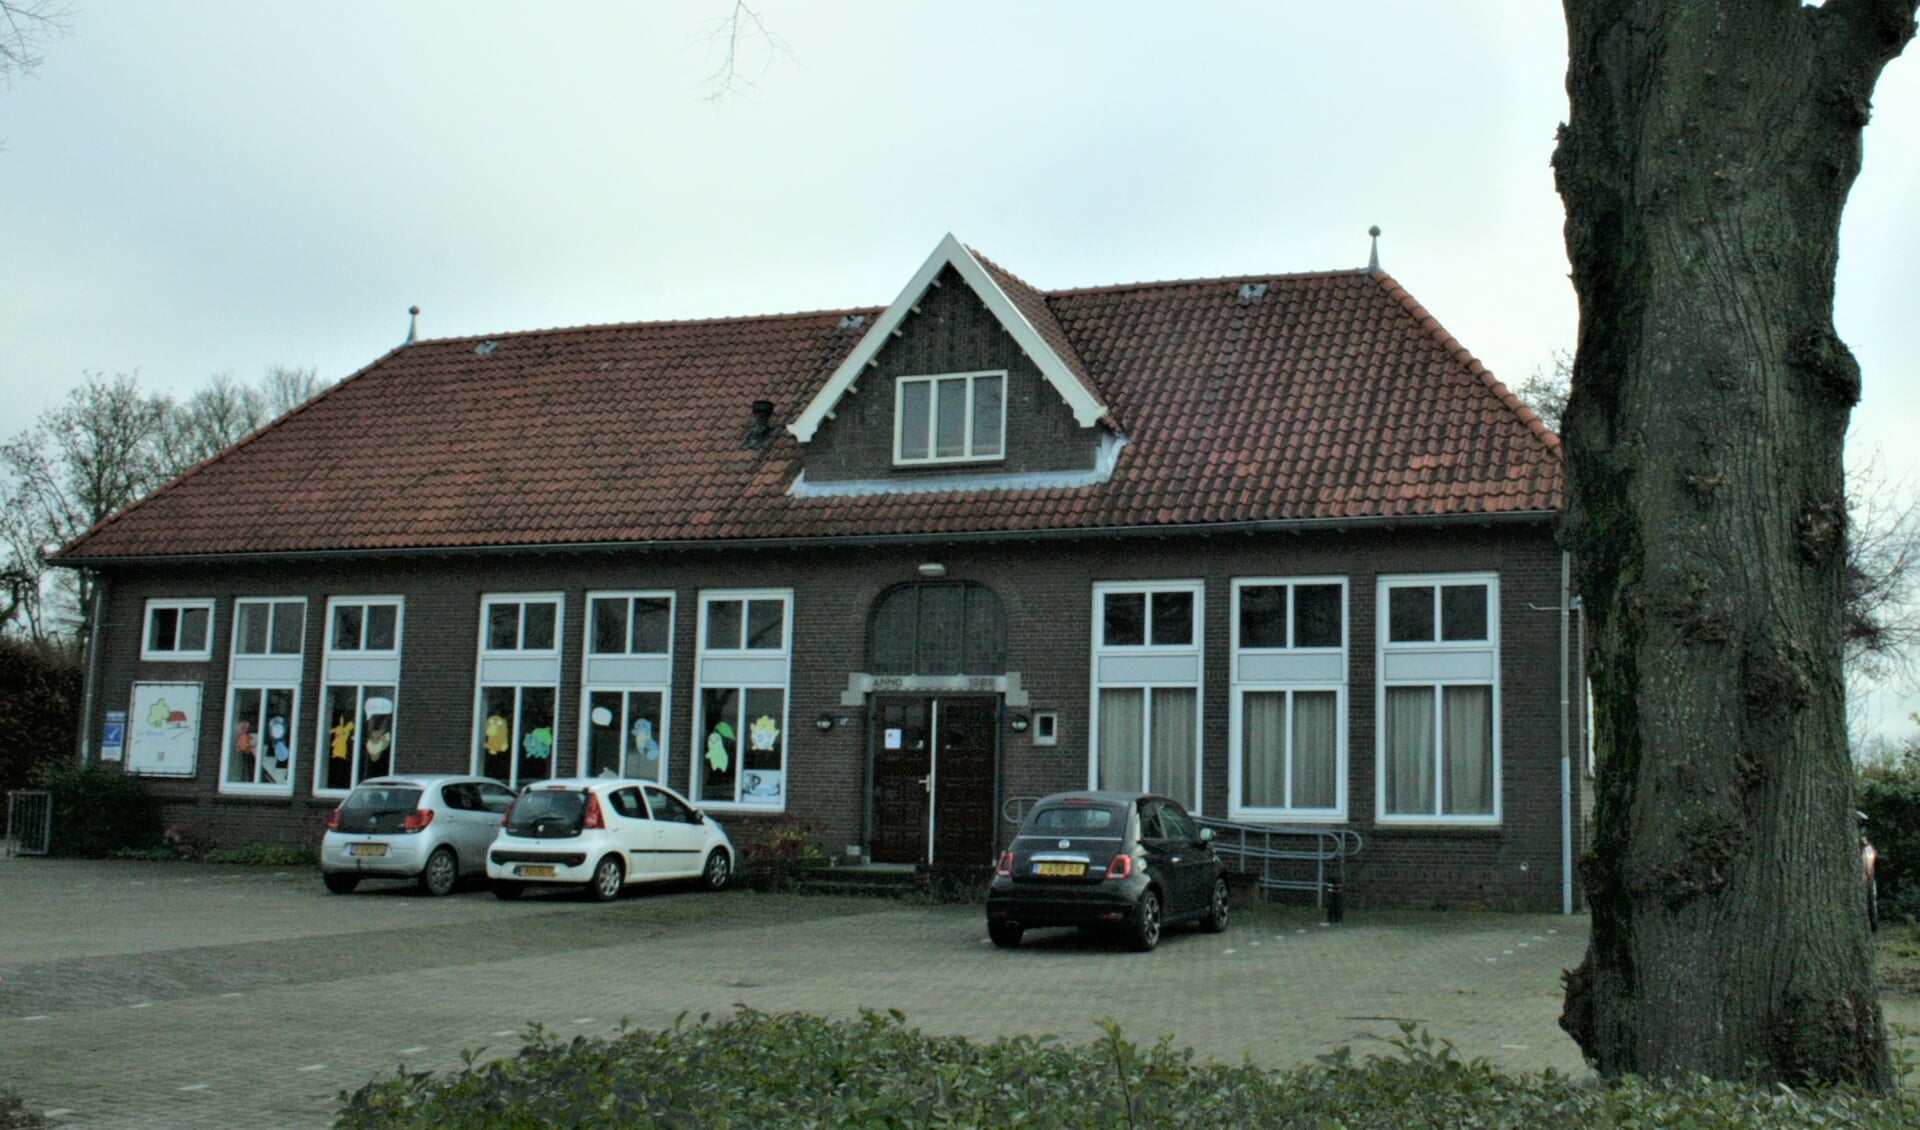 Openbare basisschool De Meent in Ommeren sluit na 100 jaar de deuren definitief.